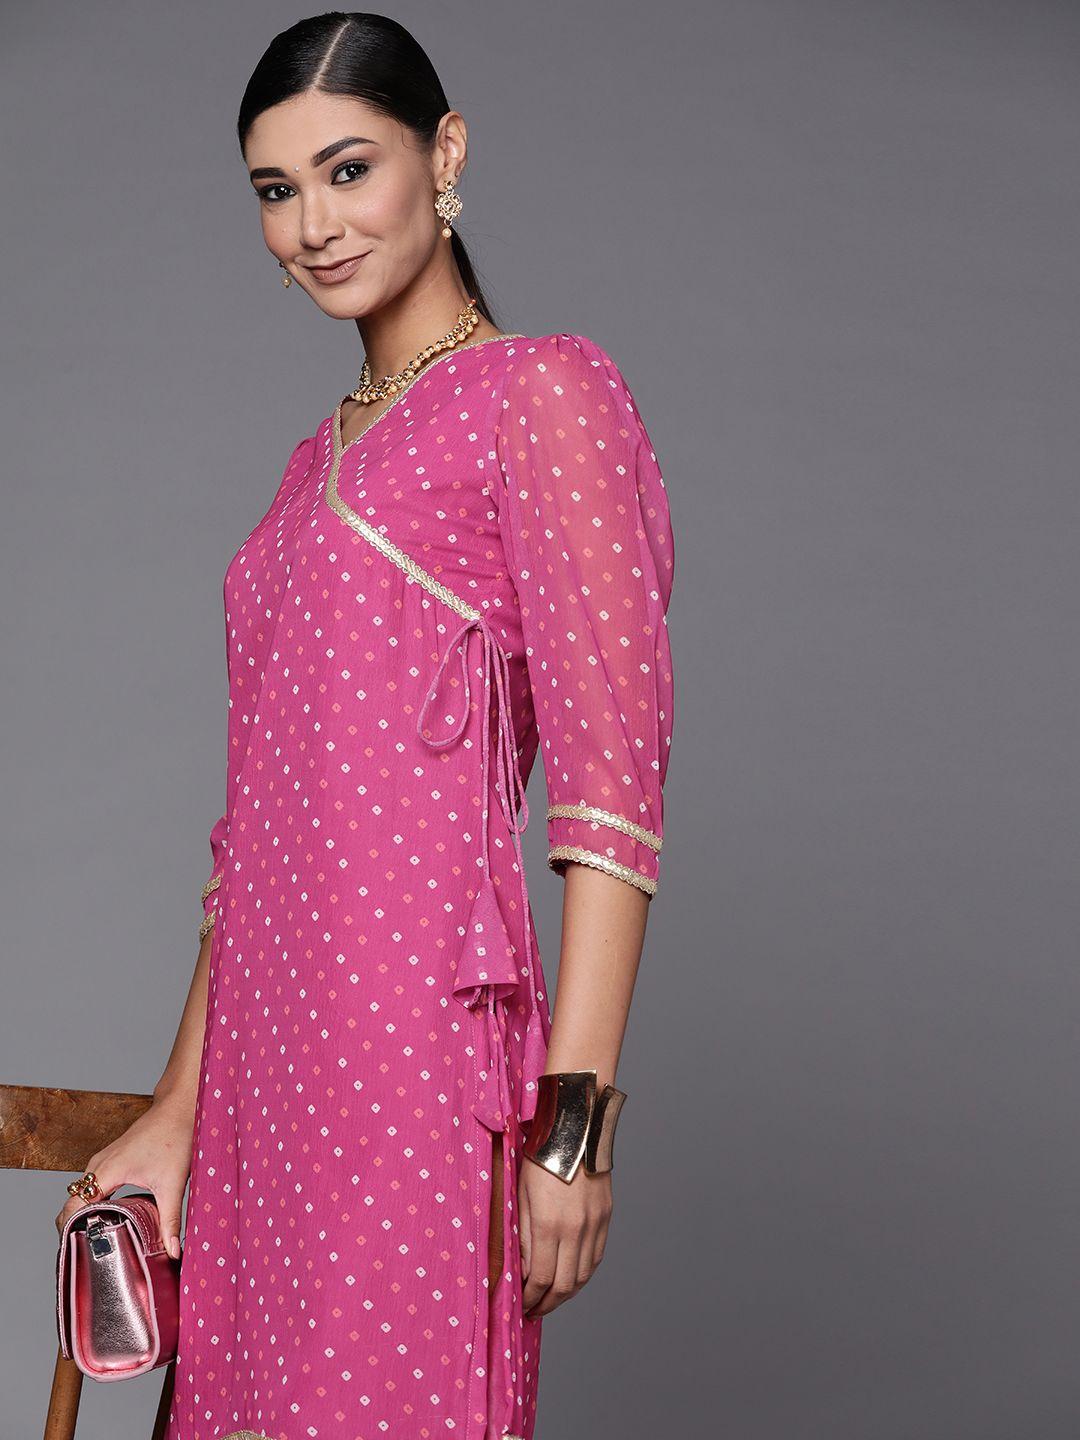 inddus-women-pink-bandhani-printed-pastels-georgette-kurta